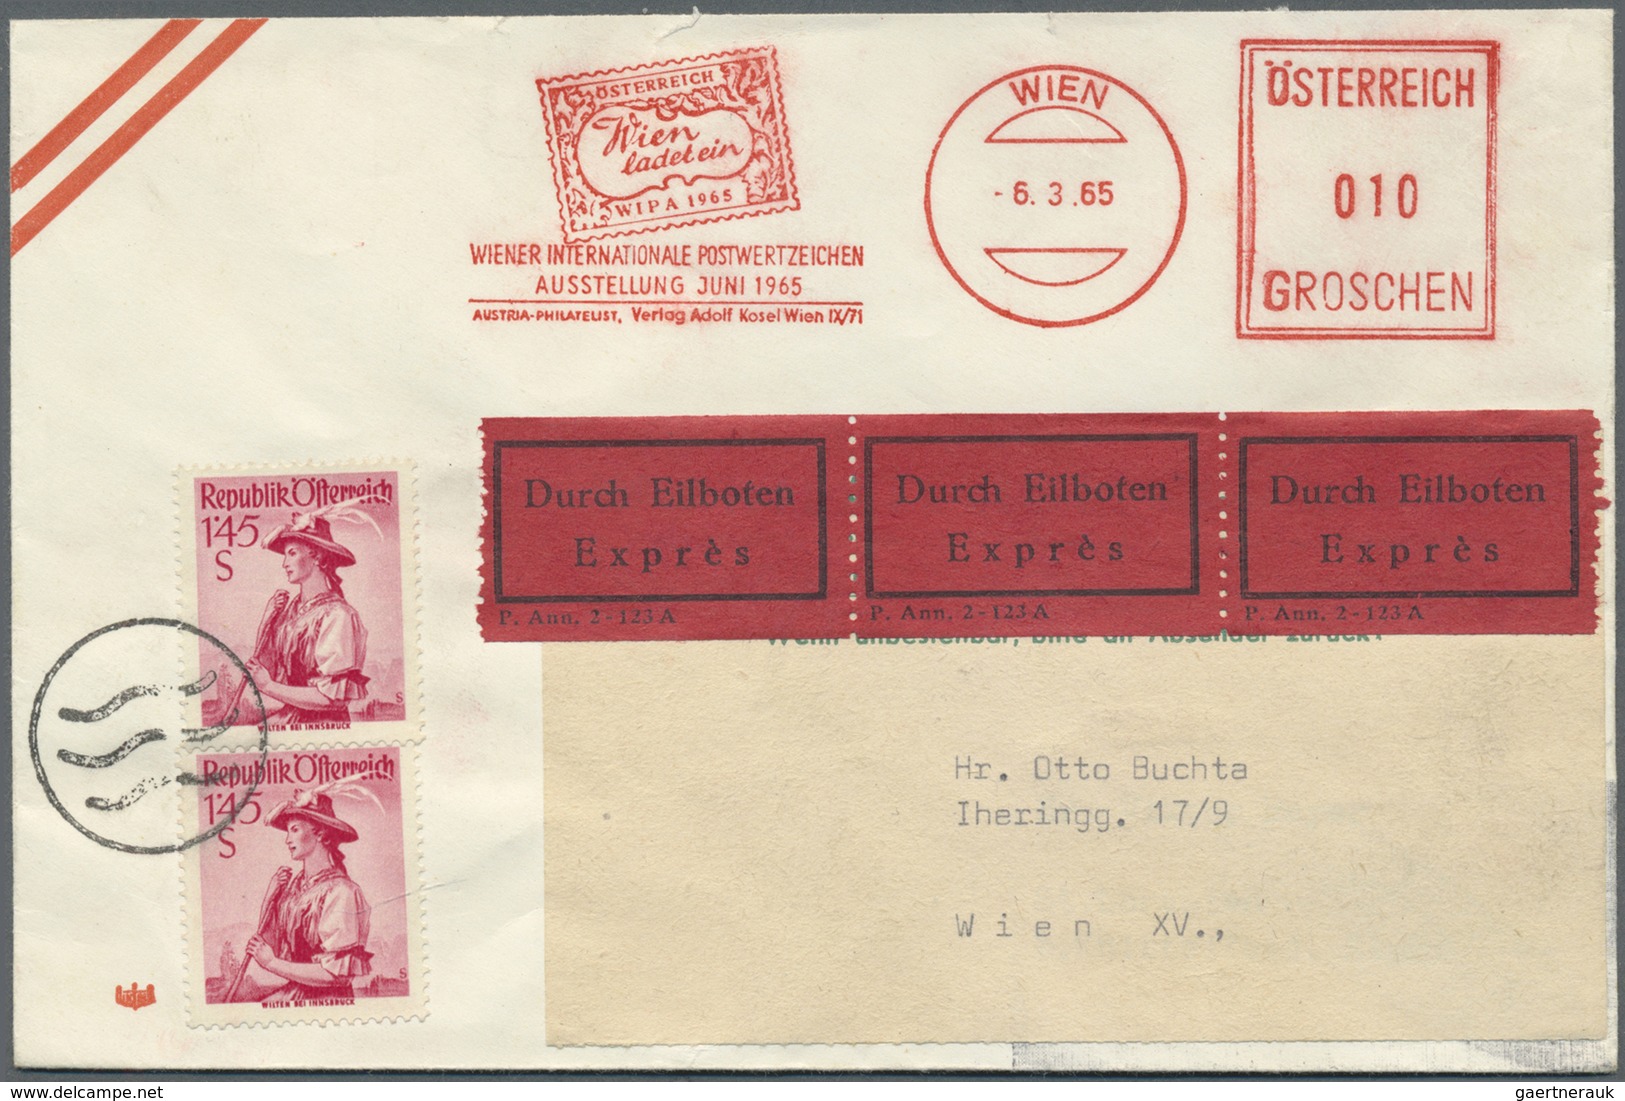 Br/GA Österreich: 1880/1960 (ca.), vielseitige Partie von ca. 100 Briefen und Karten, dabei zwei Zierbrief